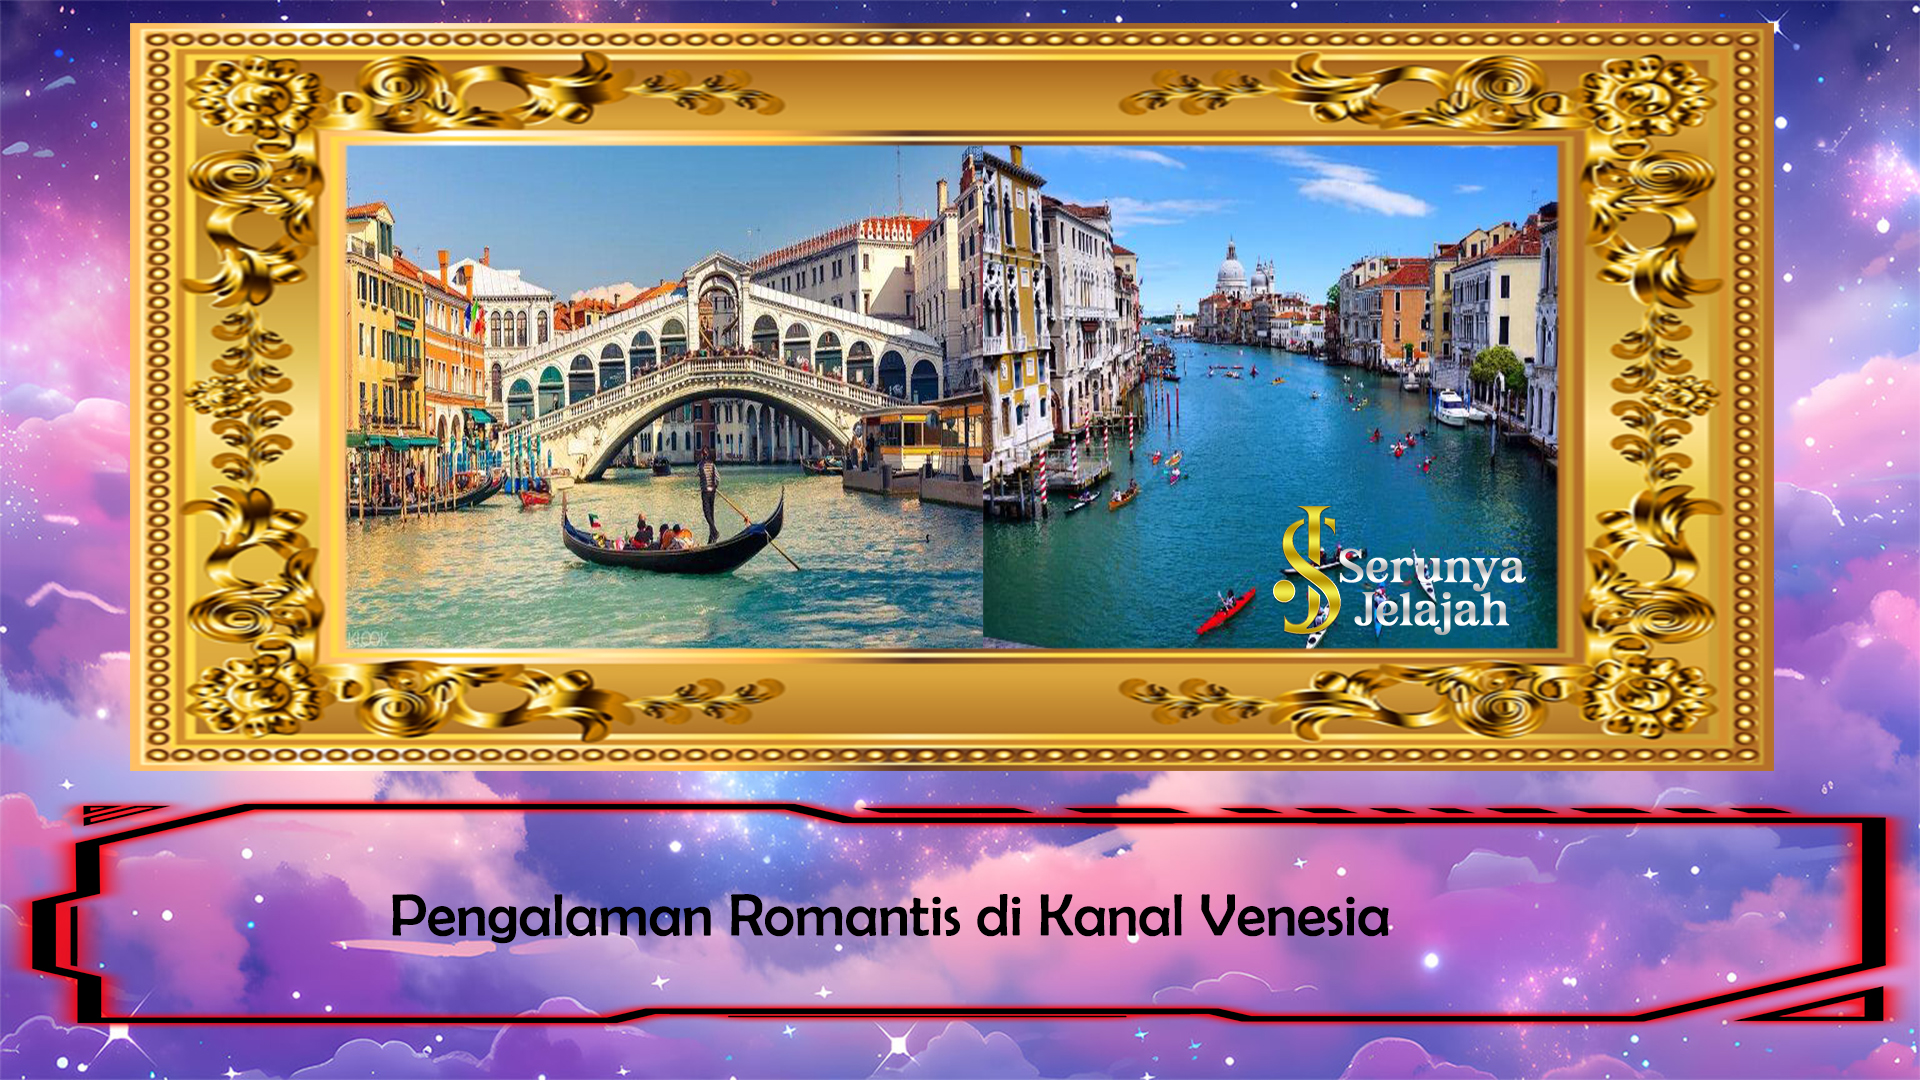 Pengalaman Romantis di Kanal Venesia